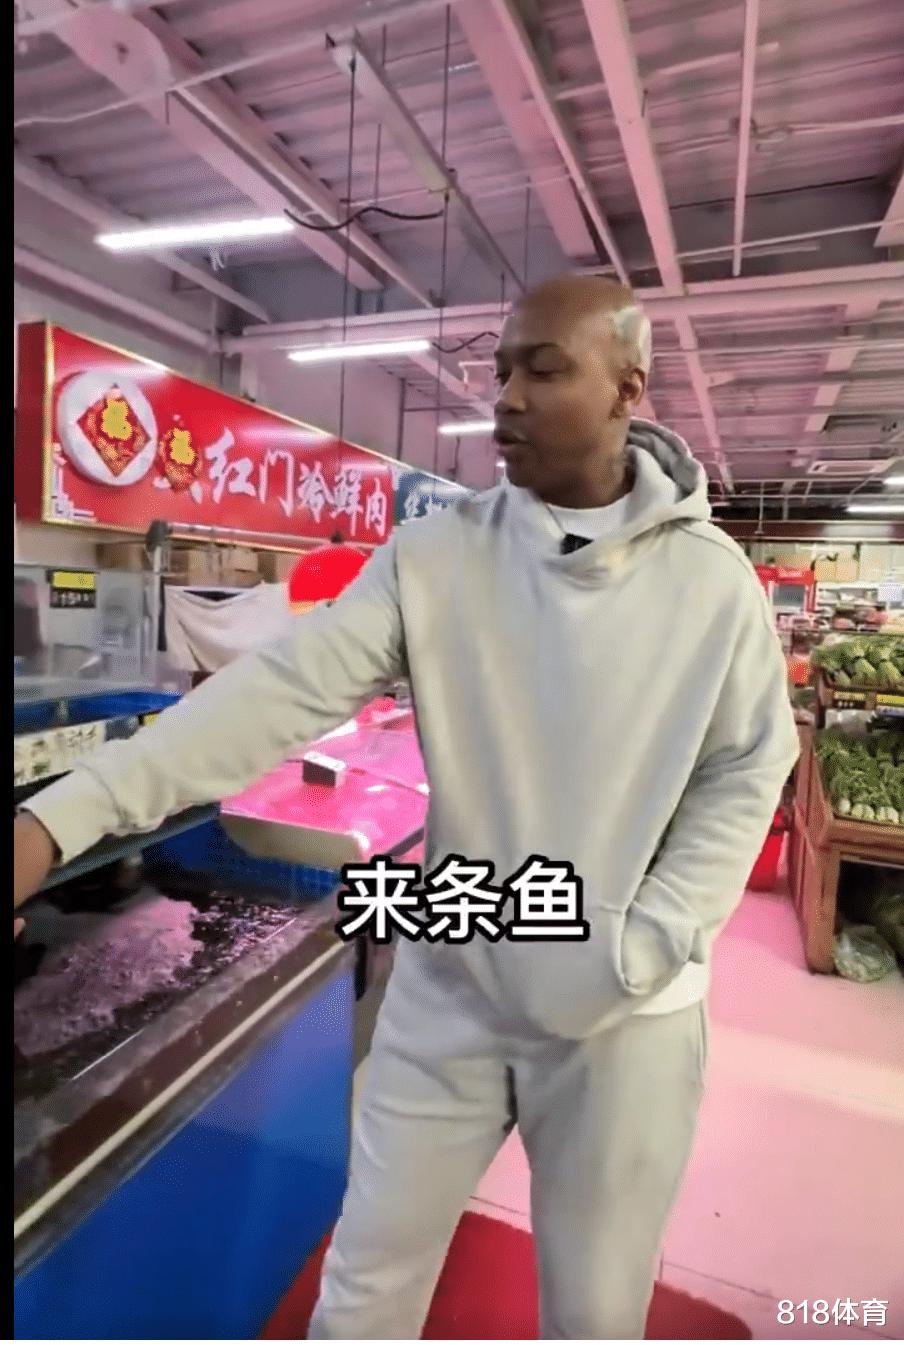 笑喷! 马布里北京菜市场买菜, 1块猪肉24块3砍价被老板拒绝: 便宜不了(11)